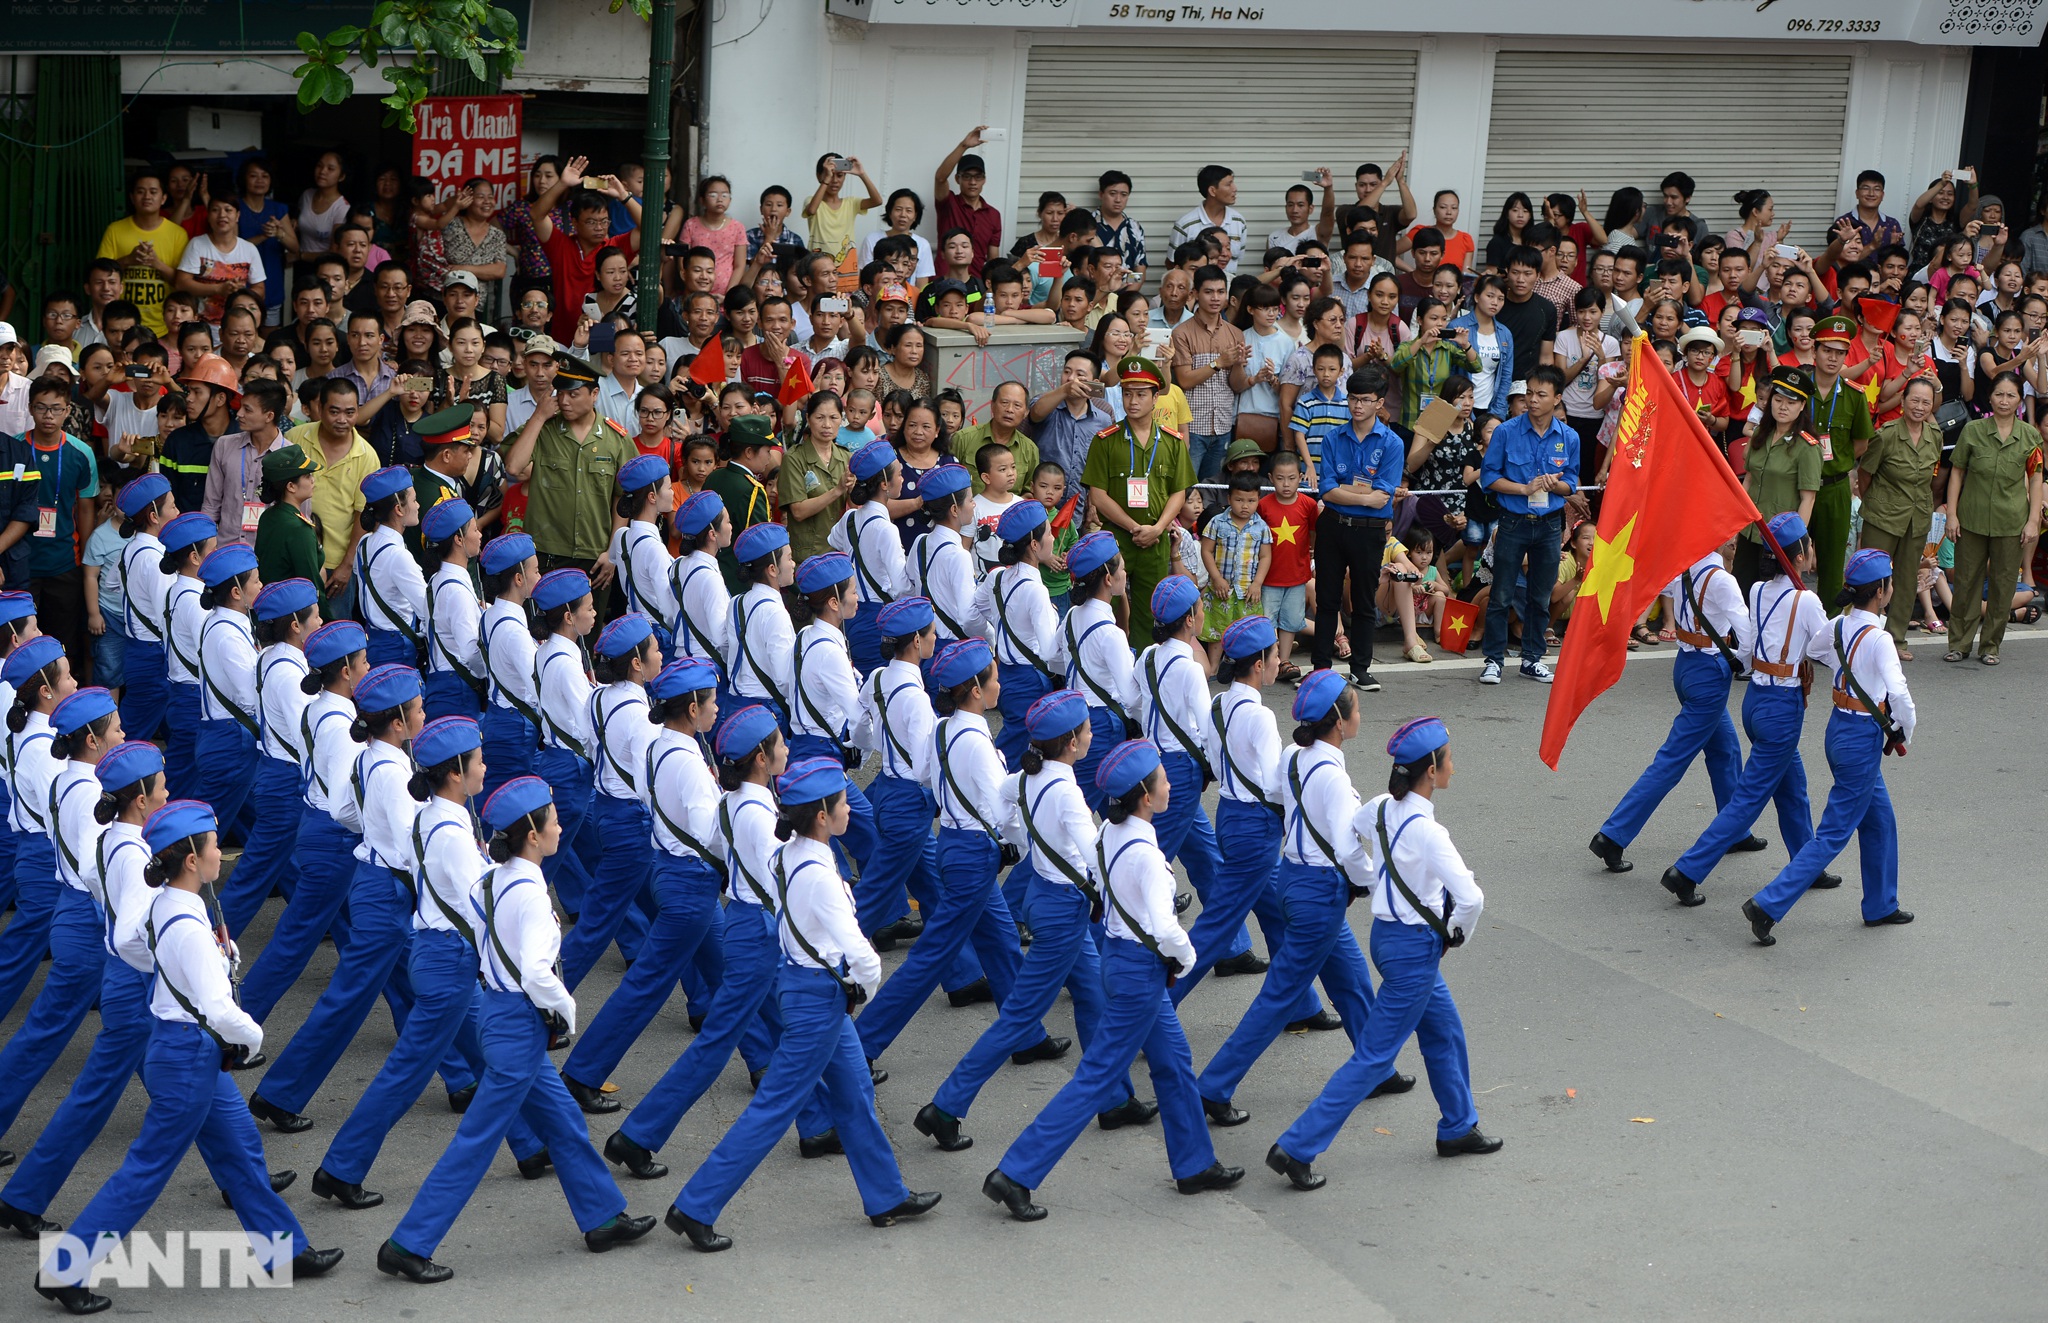 Ngắm Lễ diễu binh hùng tráng, rộn ràng đường phố Thủ đô dịp Quốc khánh 2015 - 39